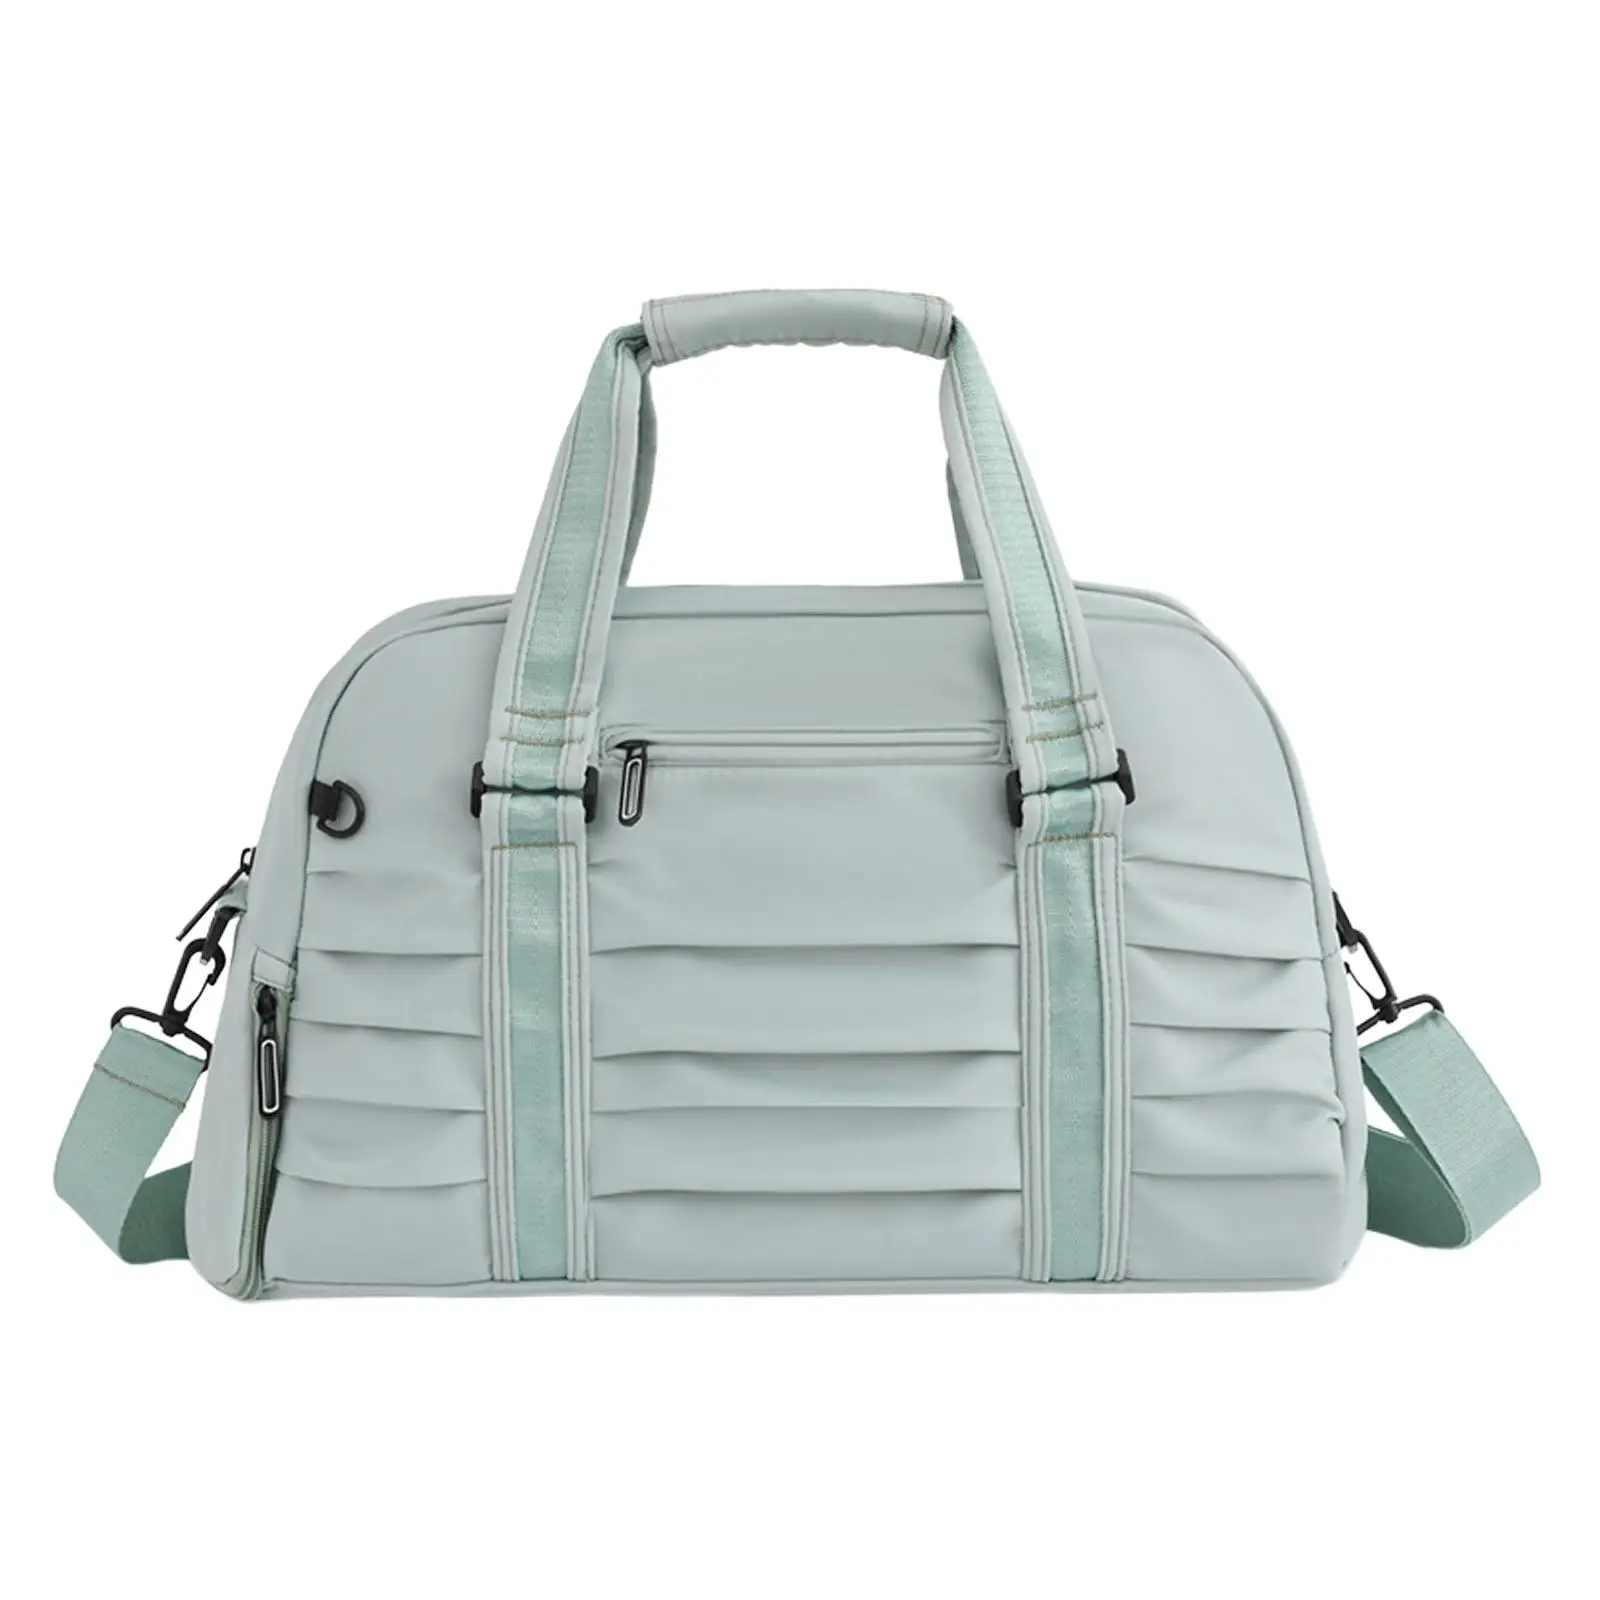 Sports Gym Bag Weekender Bag Lightweight Overnight Bag Shoulder Handbag Travel Duffle Bag for Golf Outdoor Exercise Fitness Trip